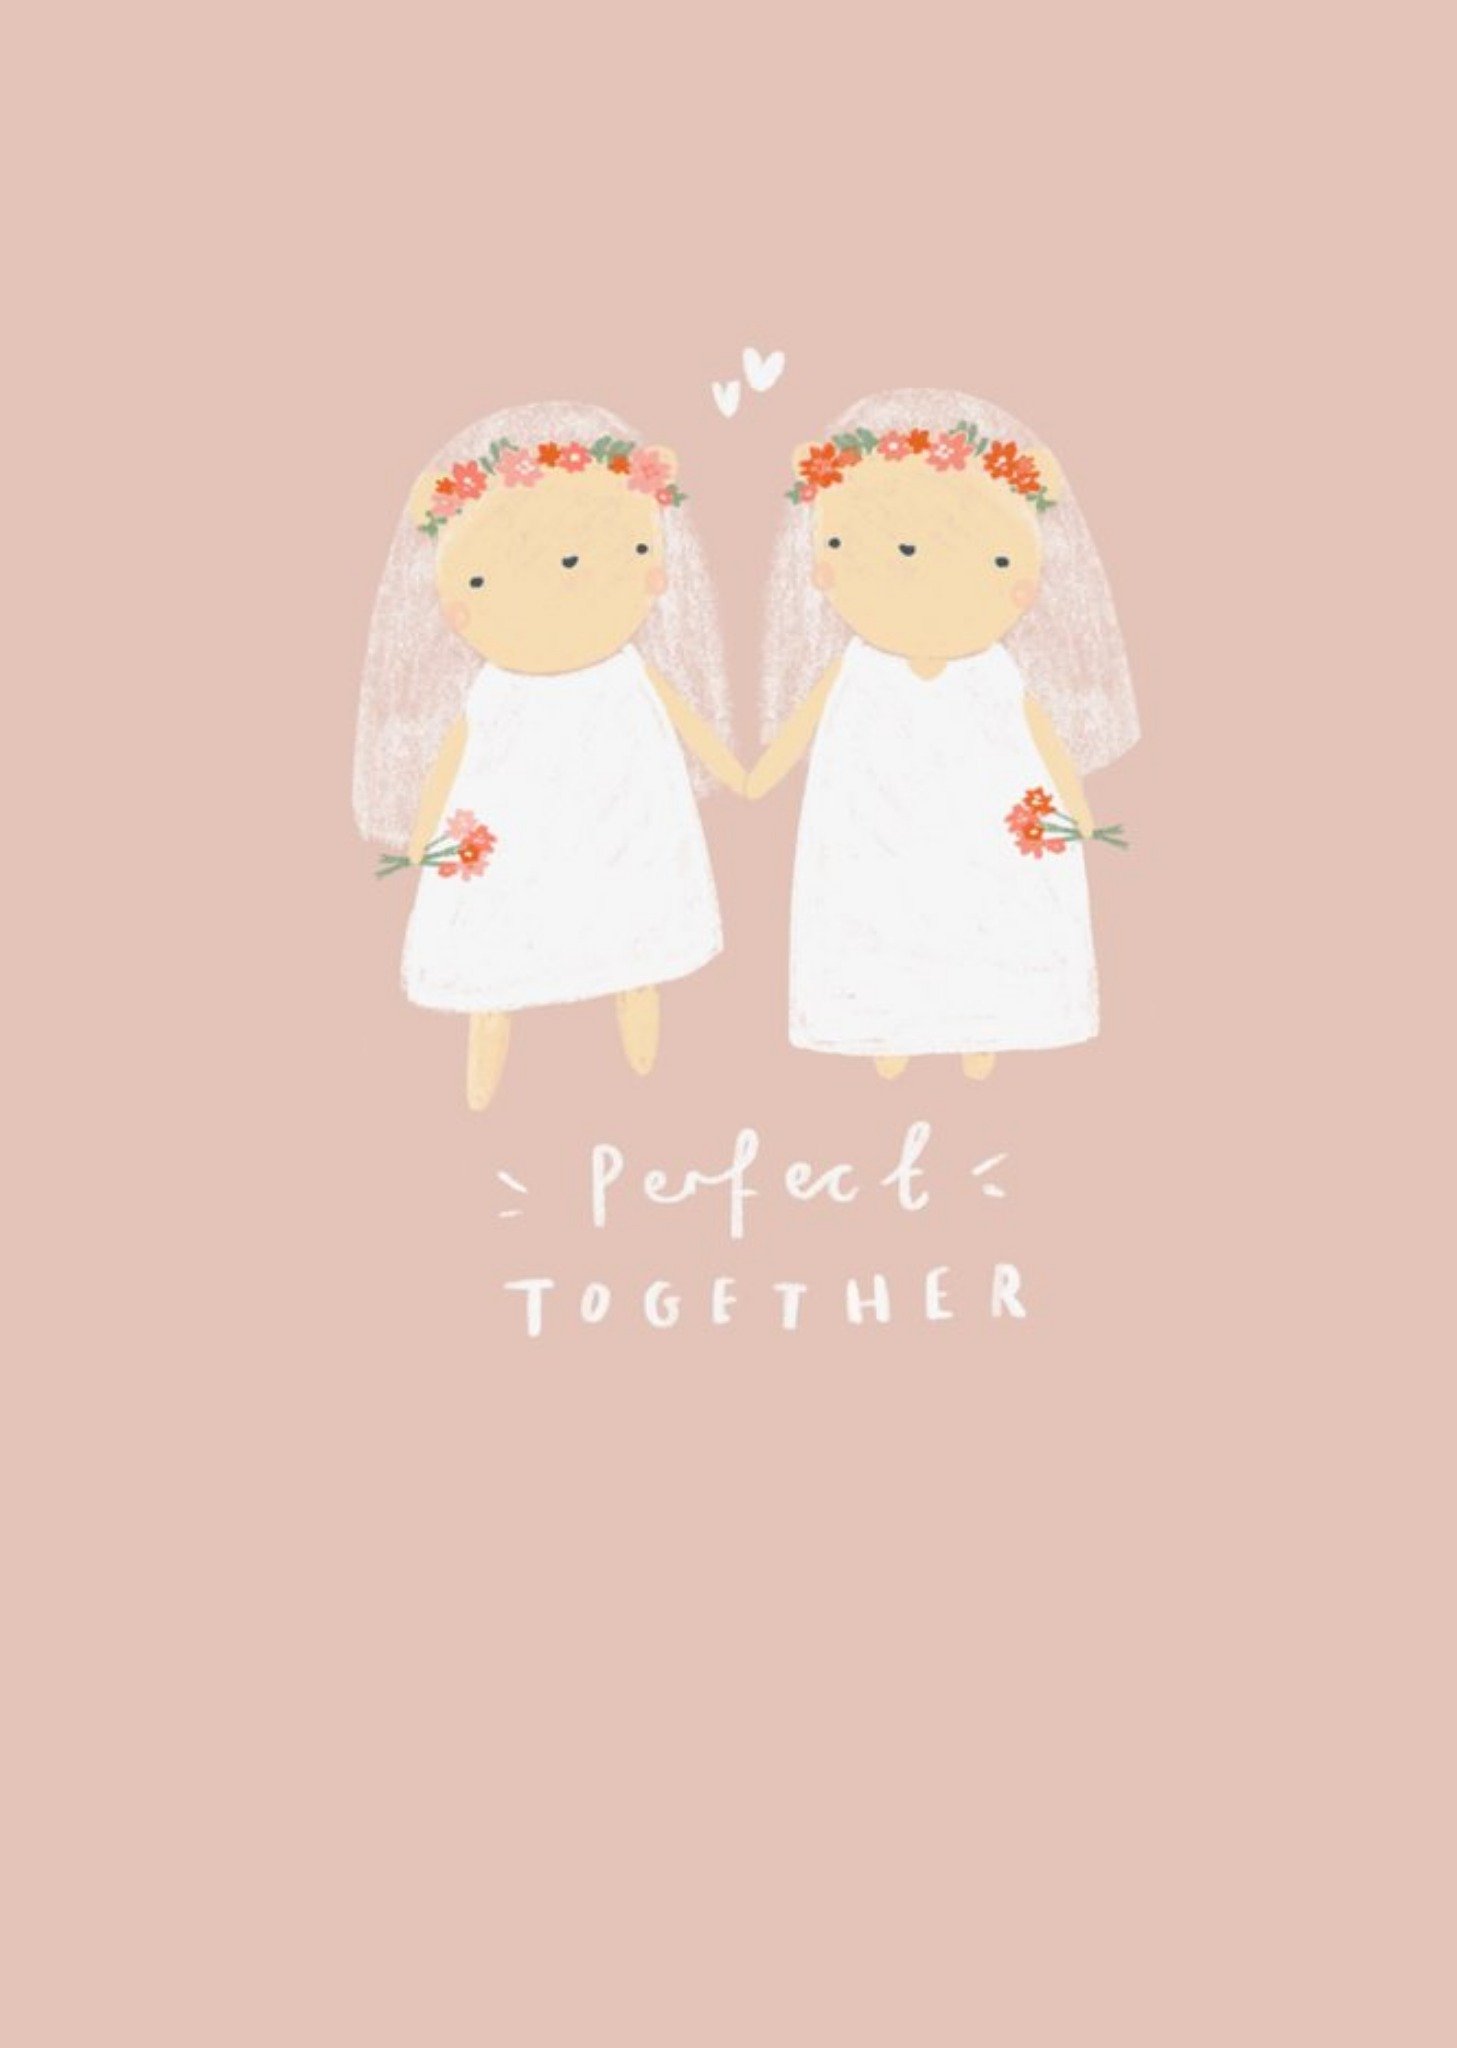 Love Hearts Beth Fletcher Illustrations Cute LGBTQ+ Female Wedding Day Bear Card, Large